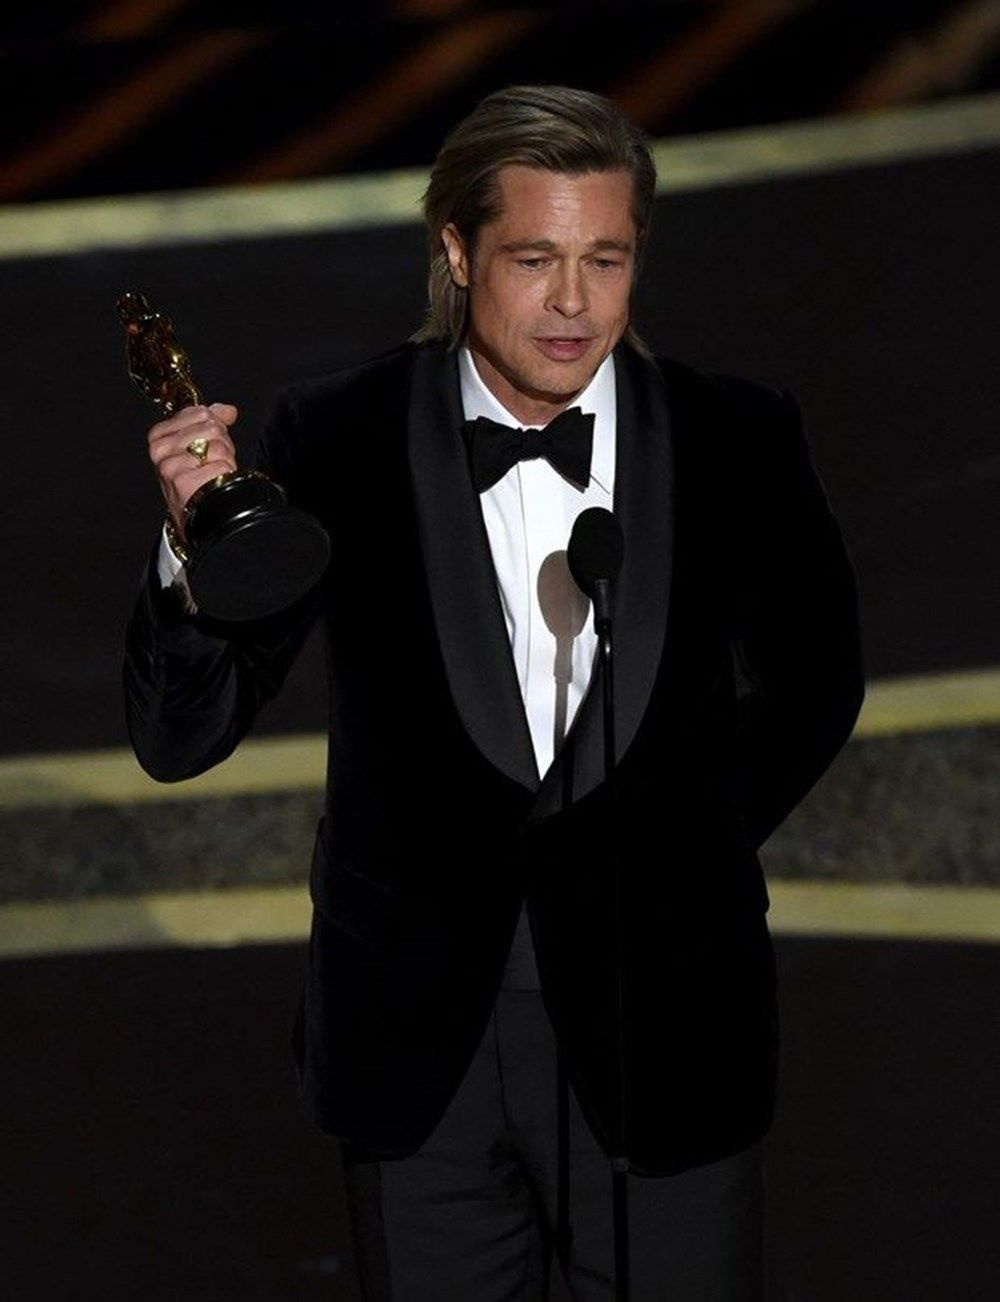 92. Oscar Ödülleri'ni kazananlar açıklandı! Brad Pitt Donald Trump'a laf çarptı